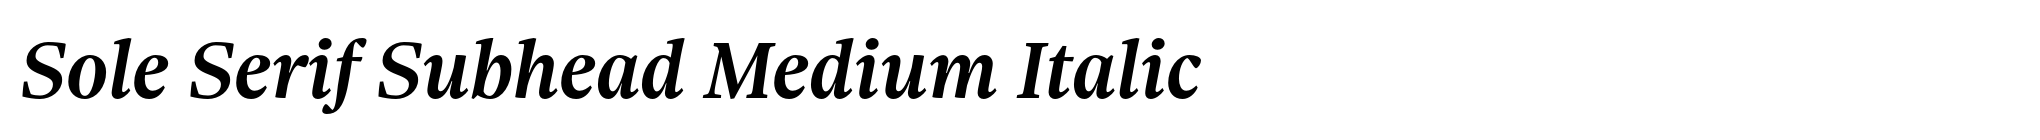 Sole Serif Subhead Medium Italic image